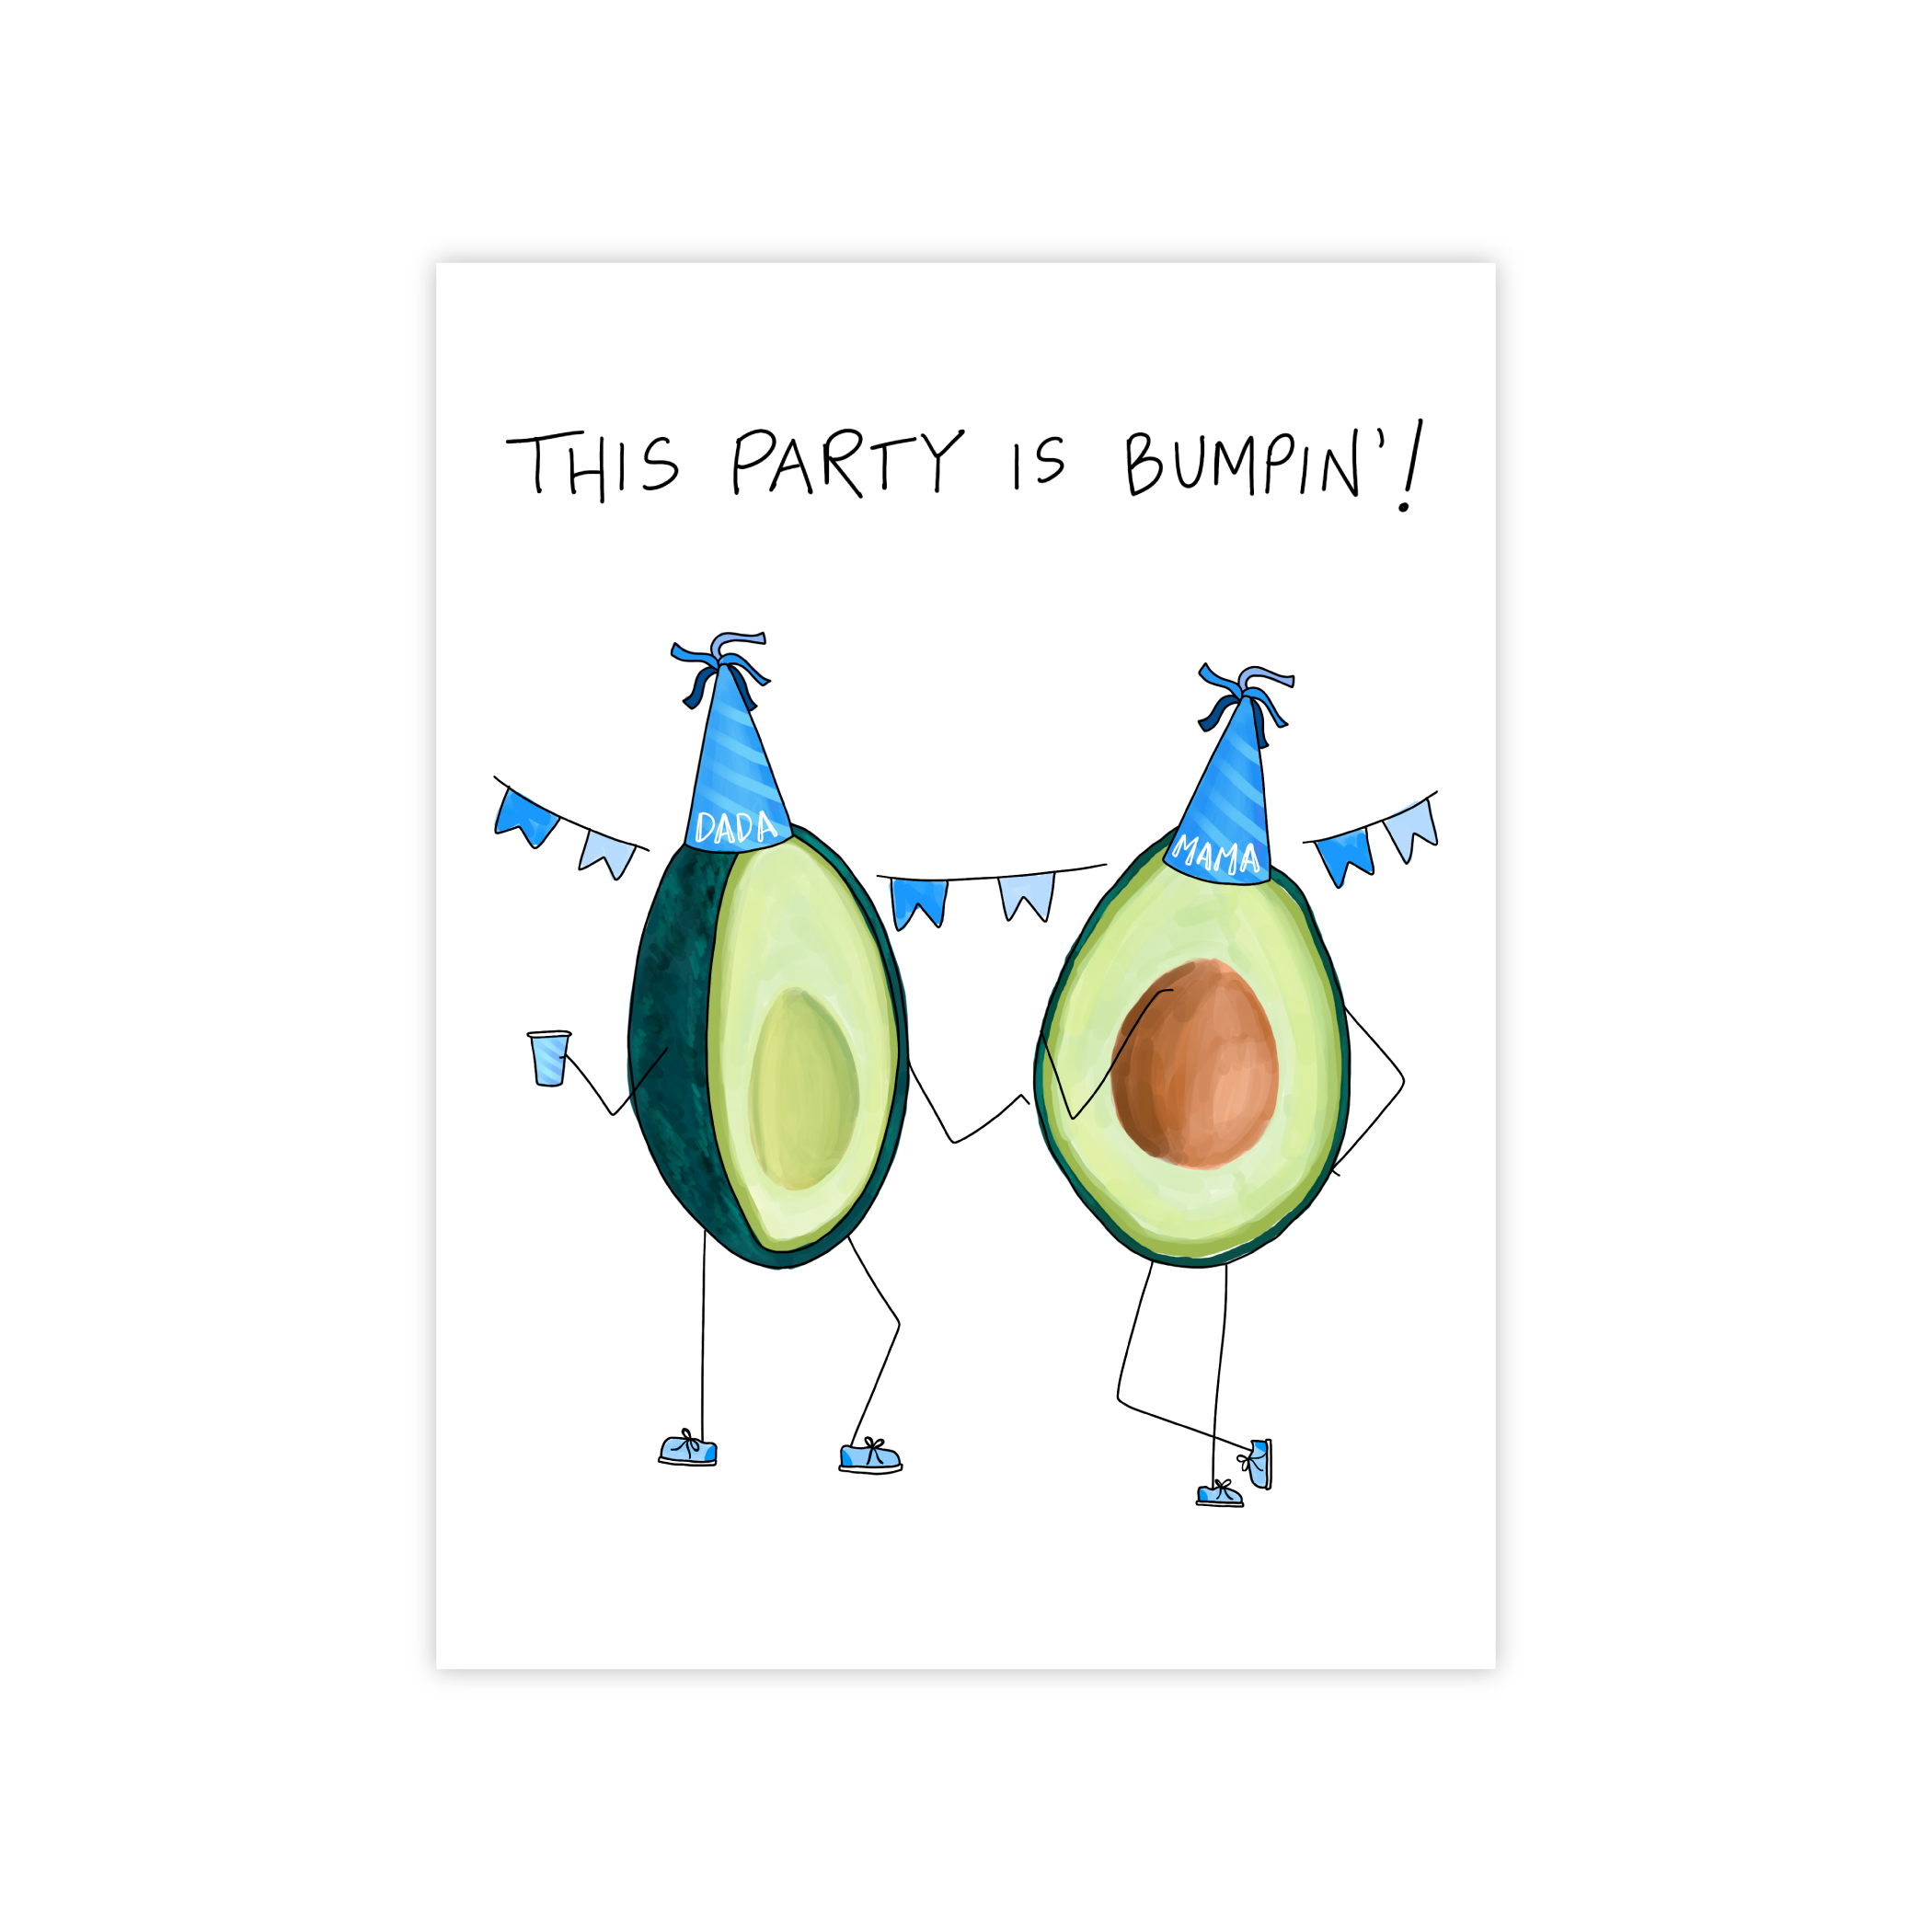 A Bumpin' Party